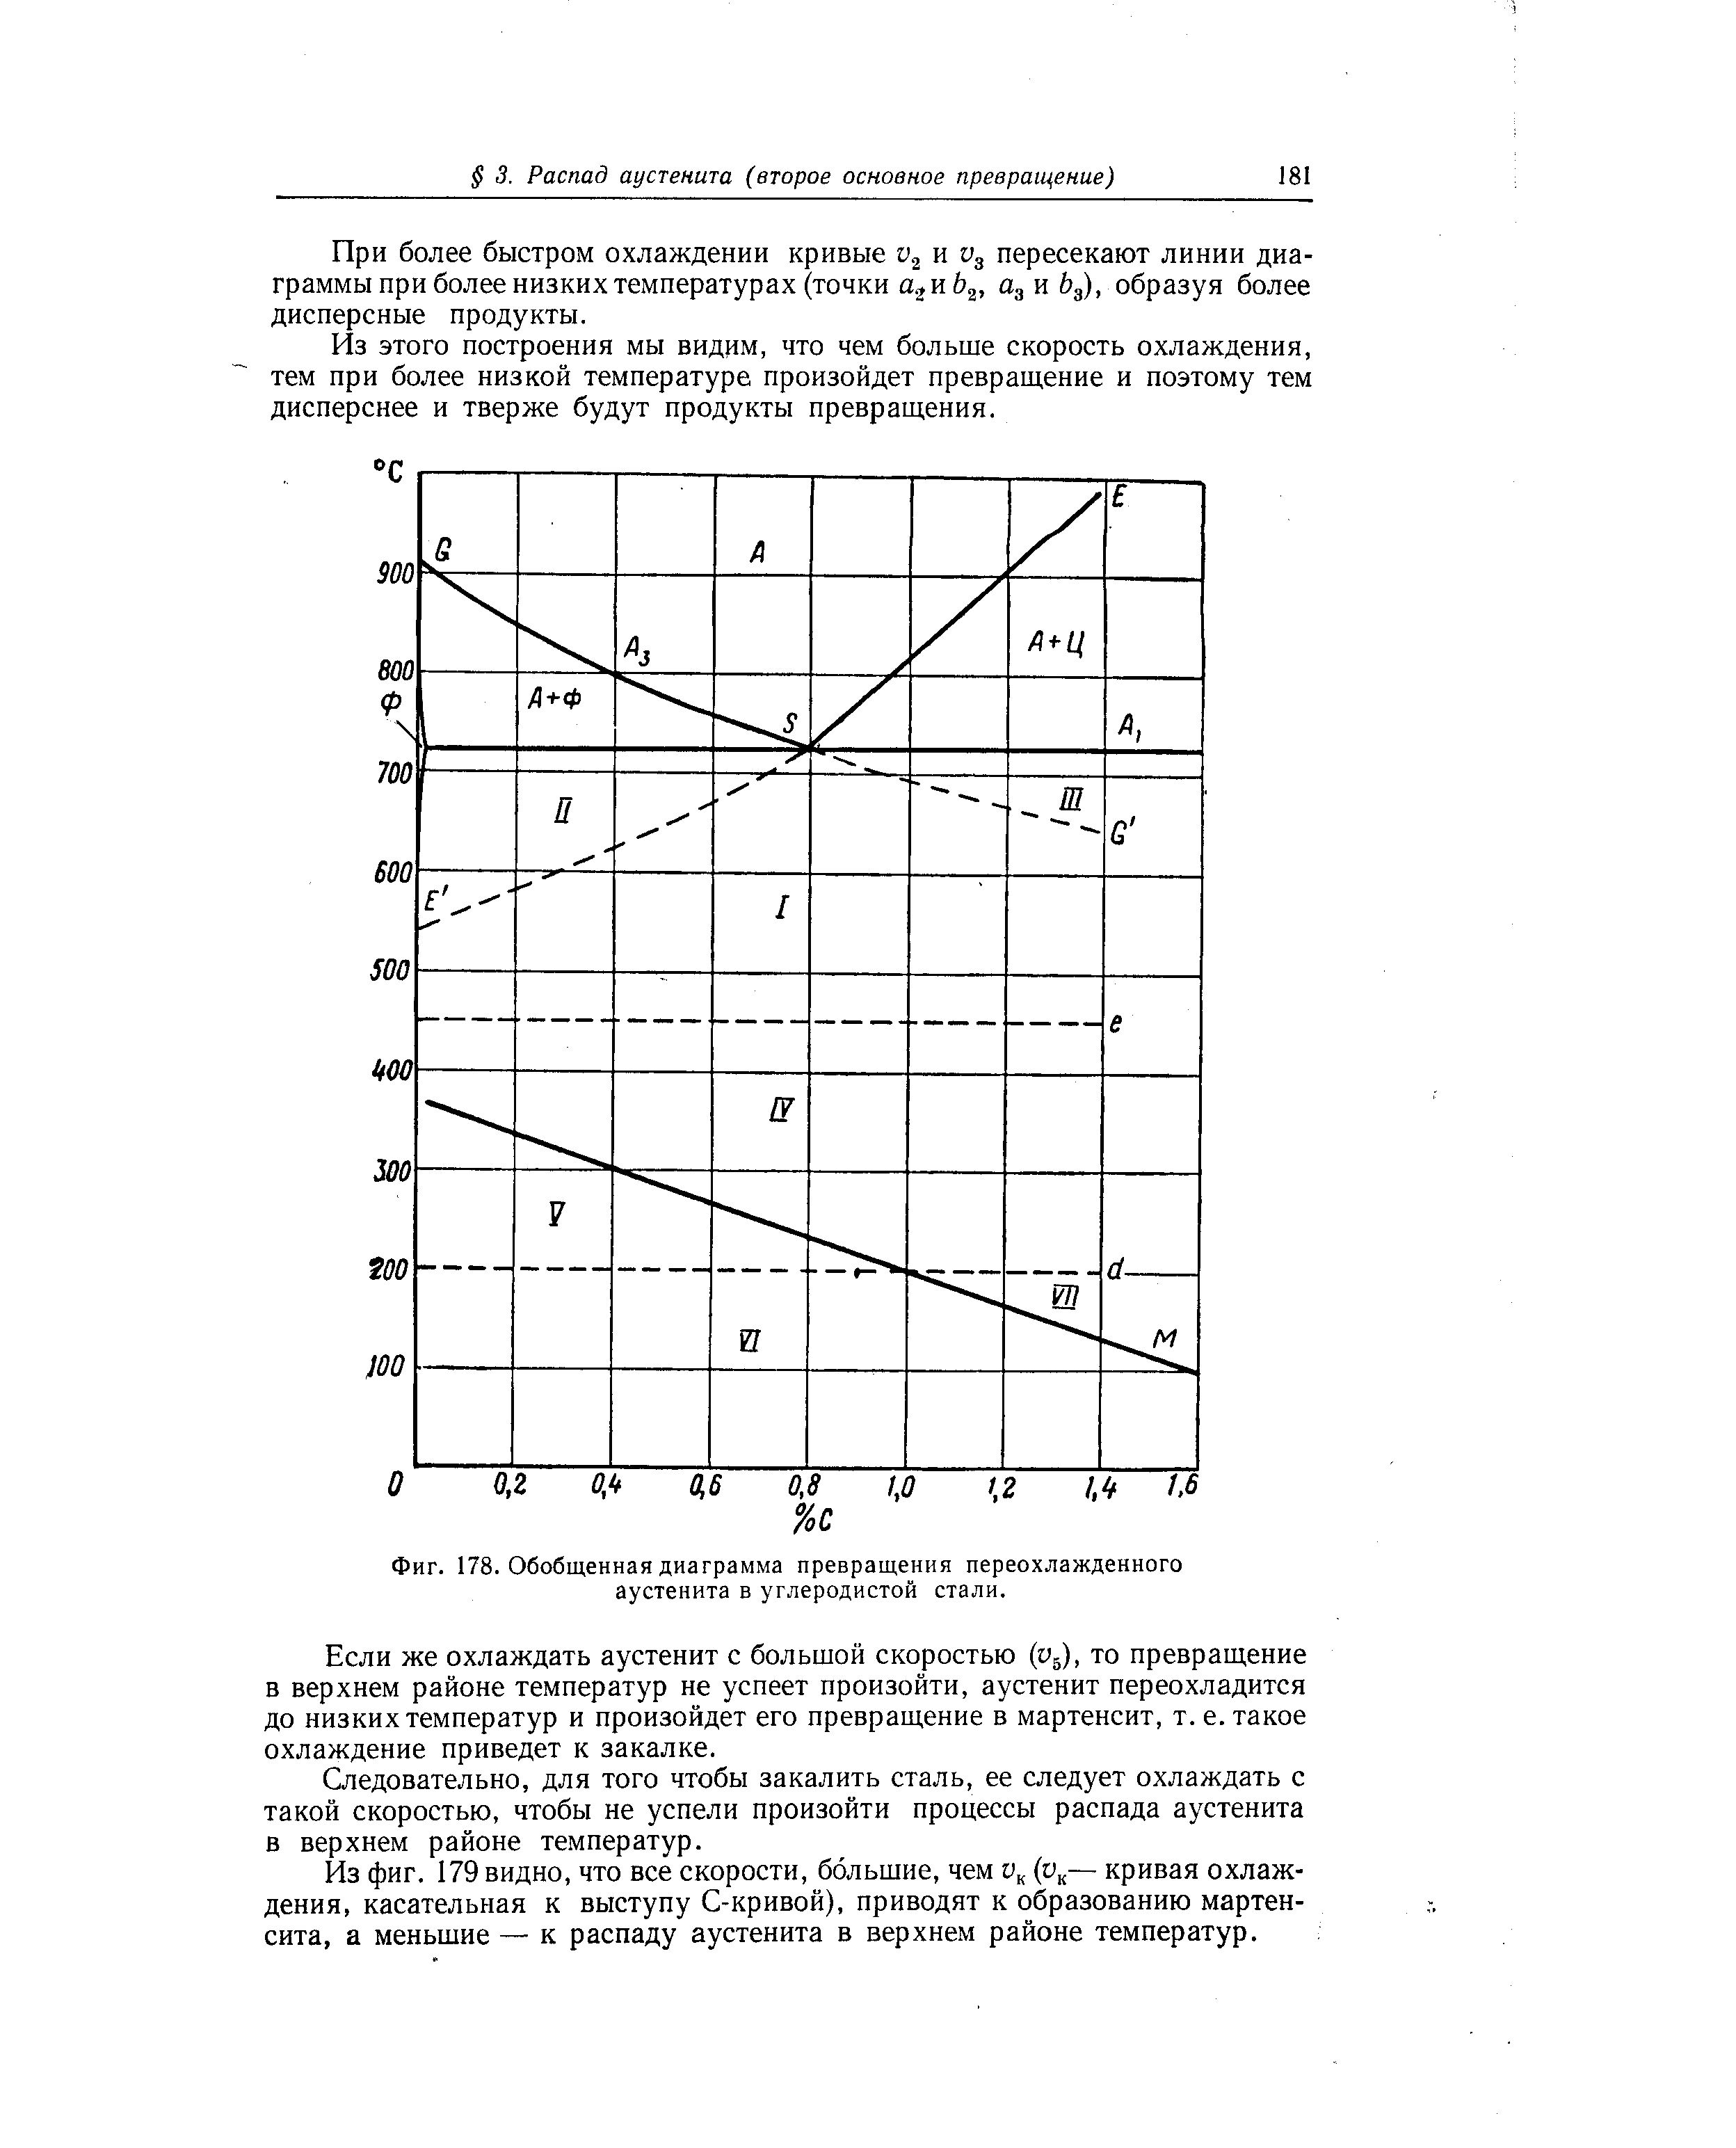 Фиг. 178. Обобщенная <a href="/info/166898">диаграмма превращения</a> переохлажденного аустенита в углеродистой стали.
